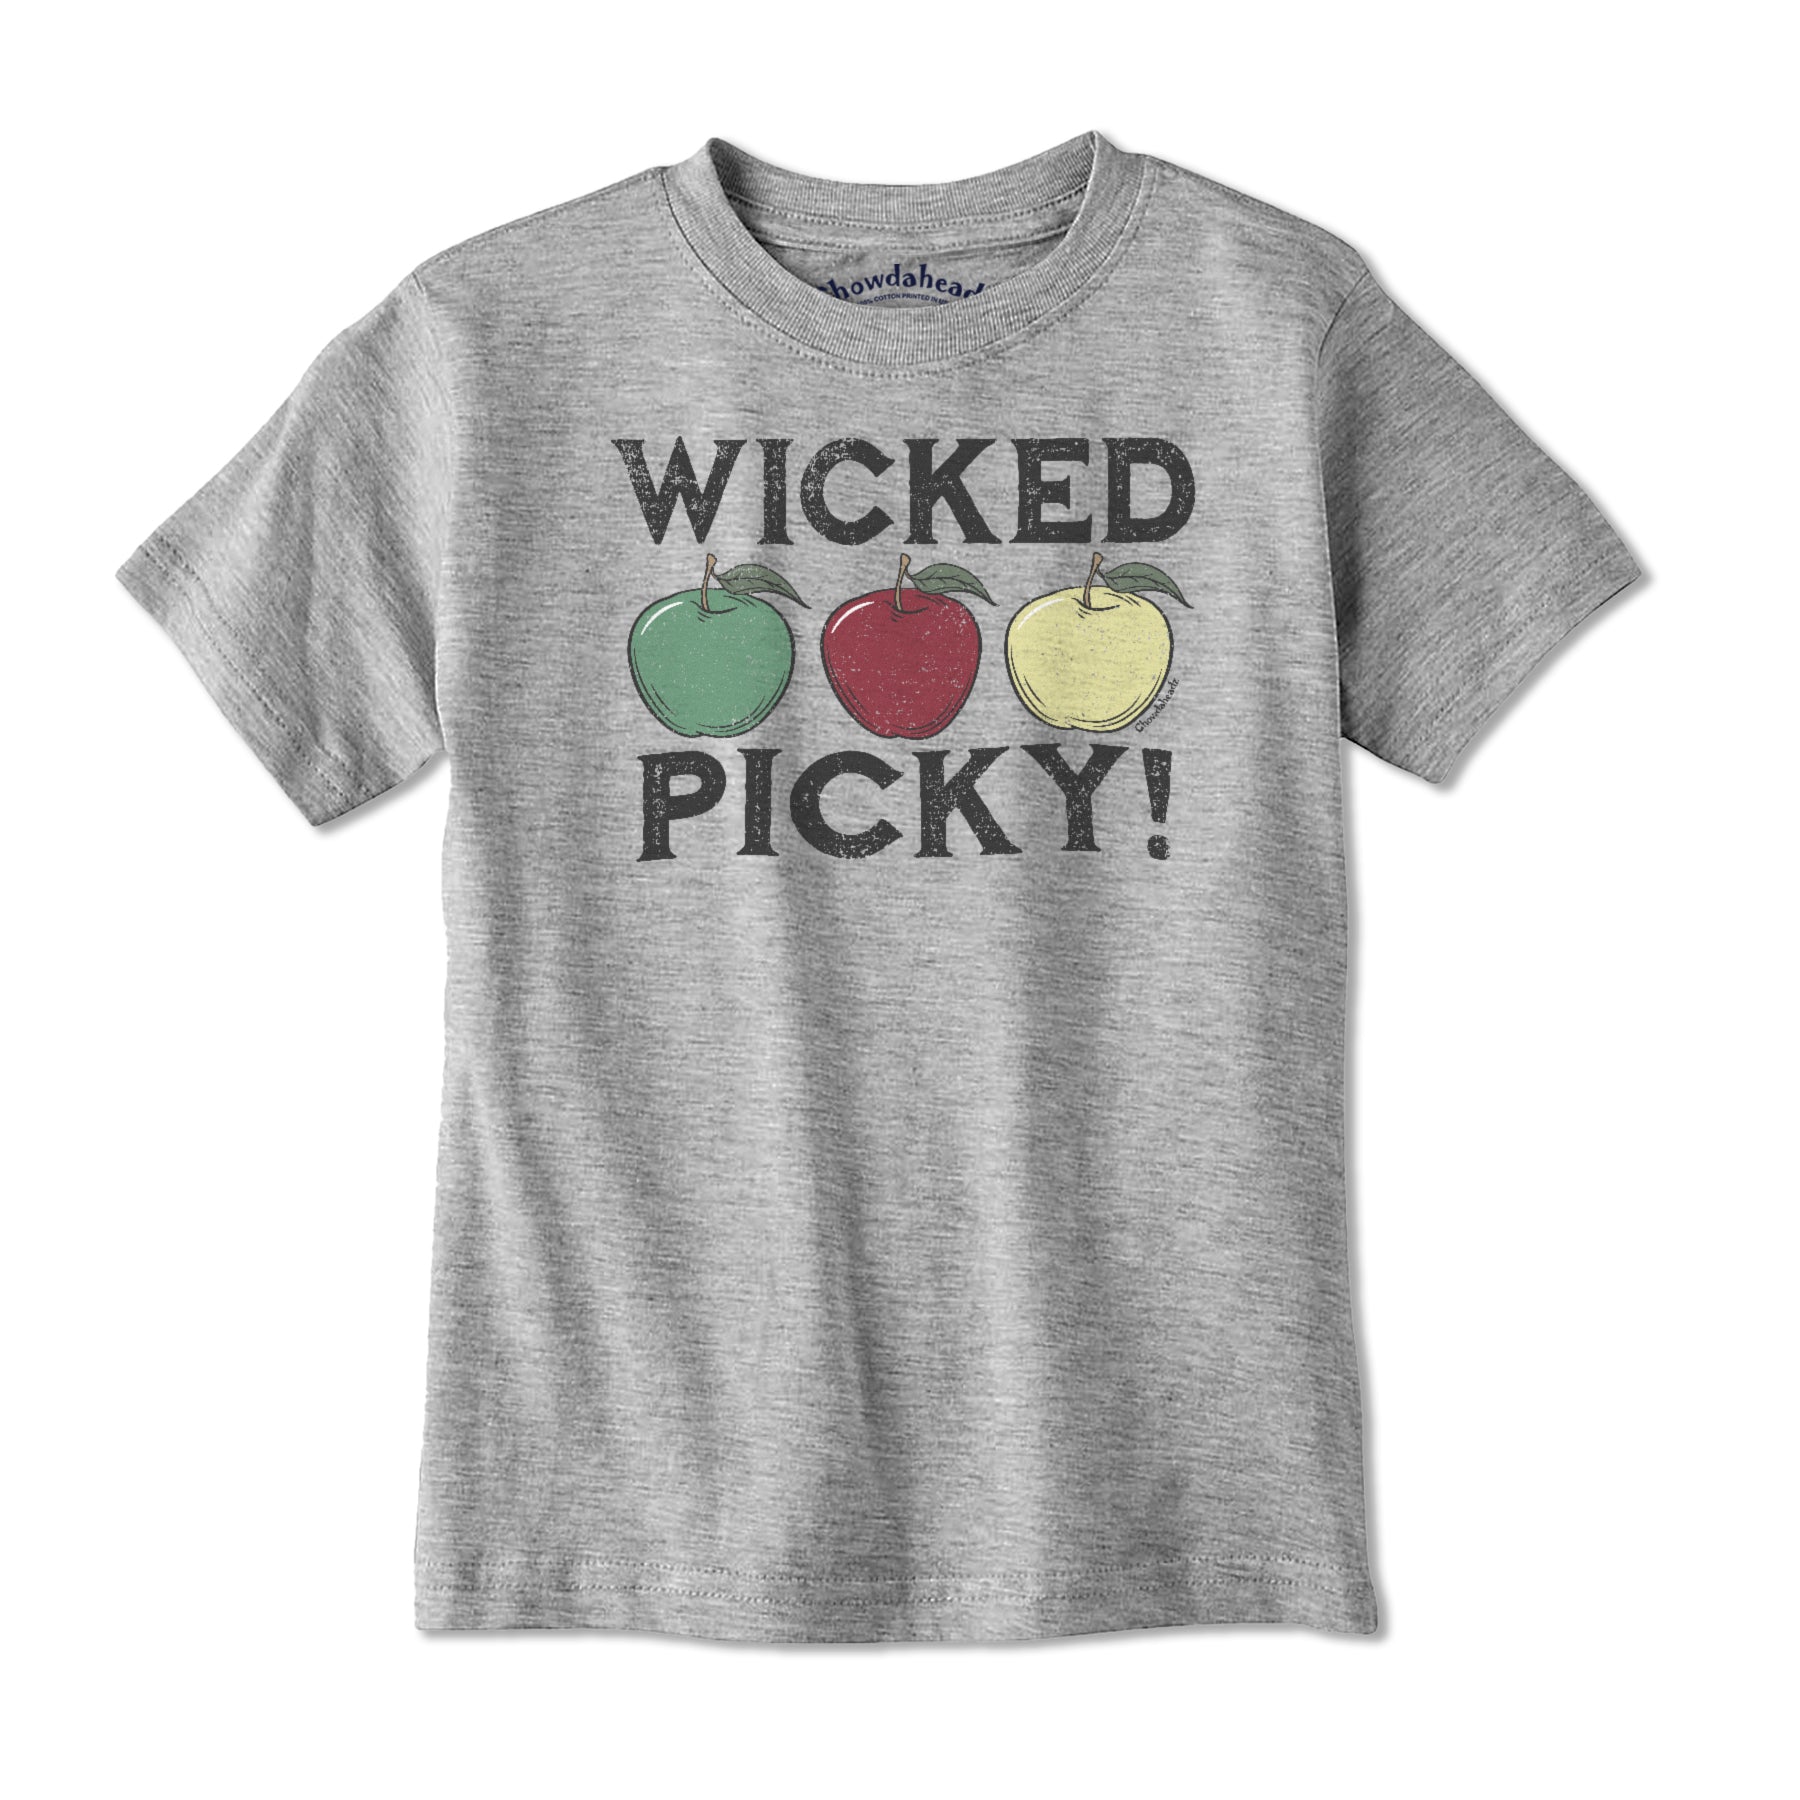 Wicked Picky Youth T-Shirt - Chowdaheadz